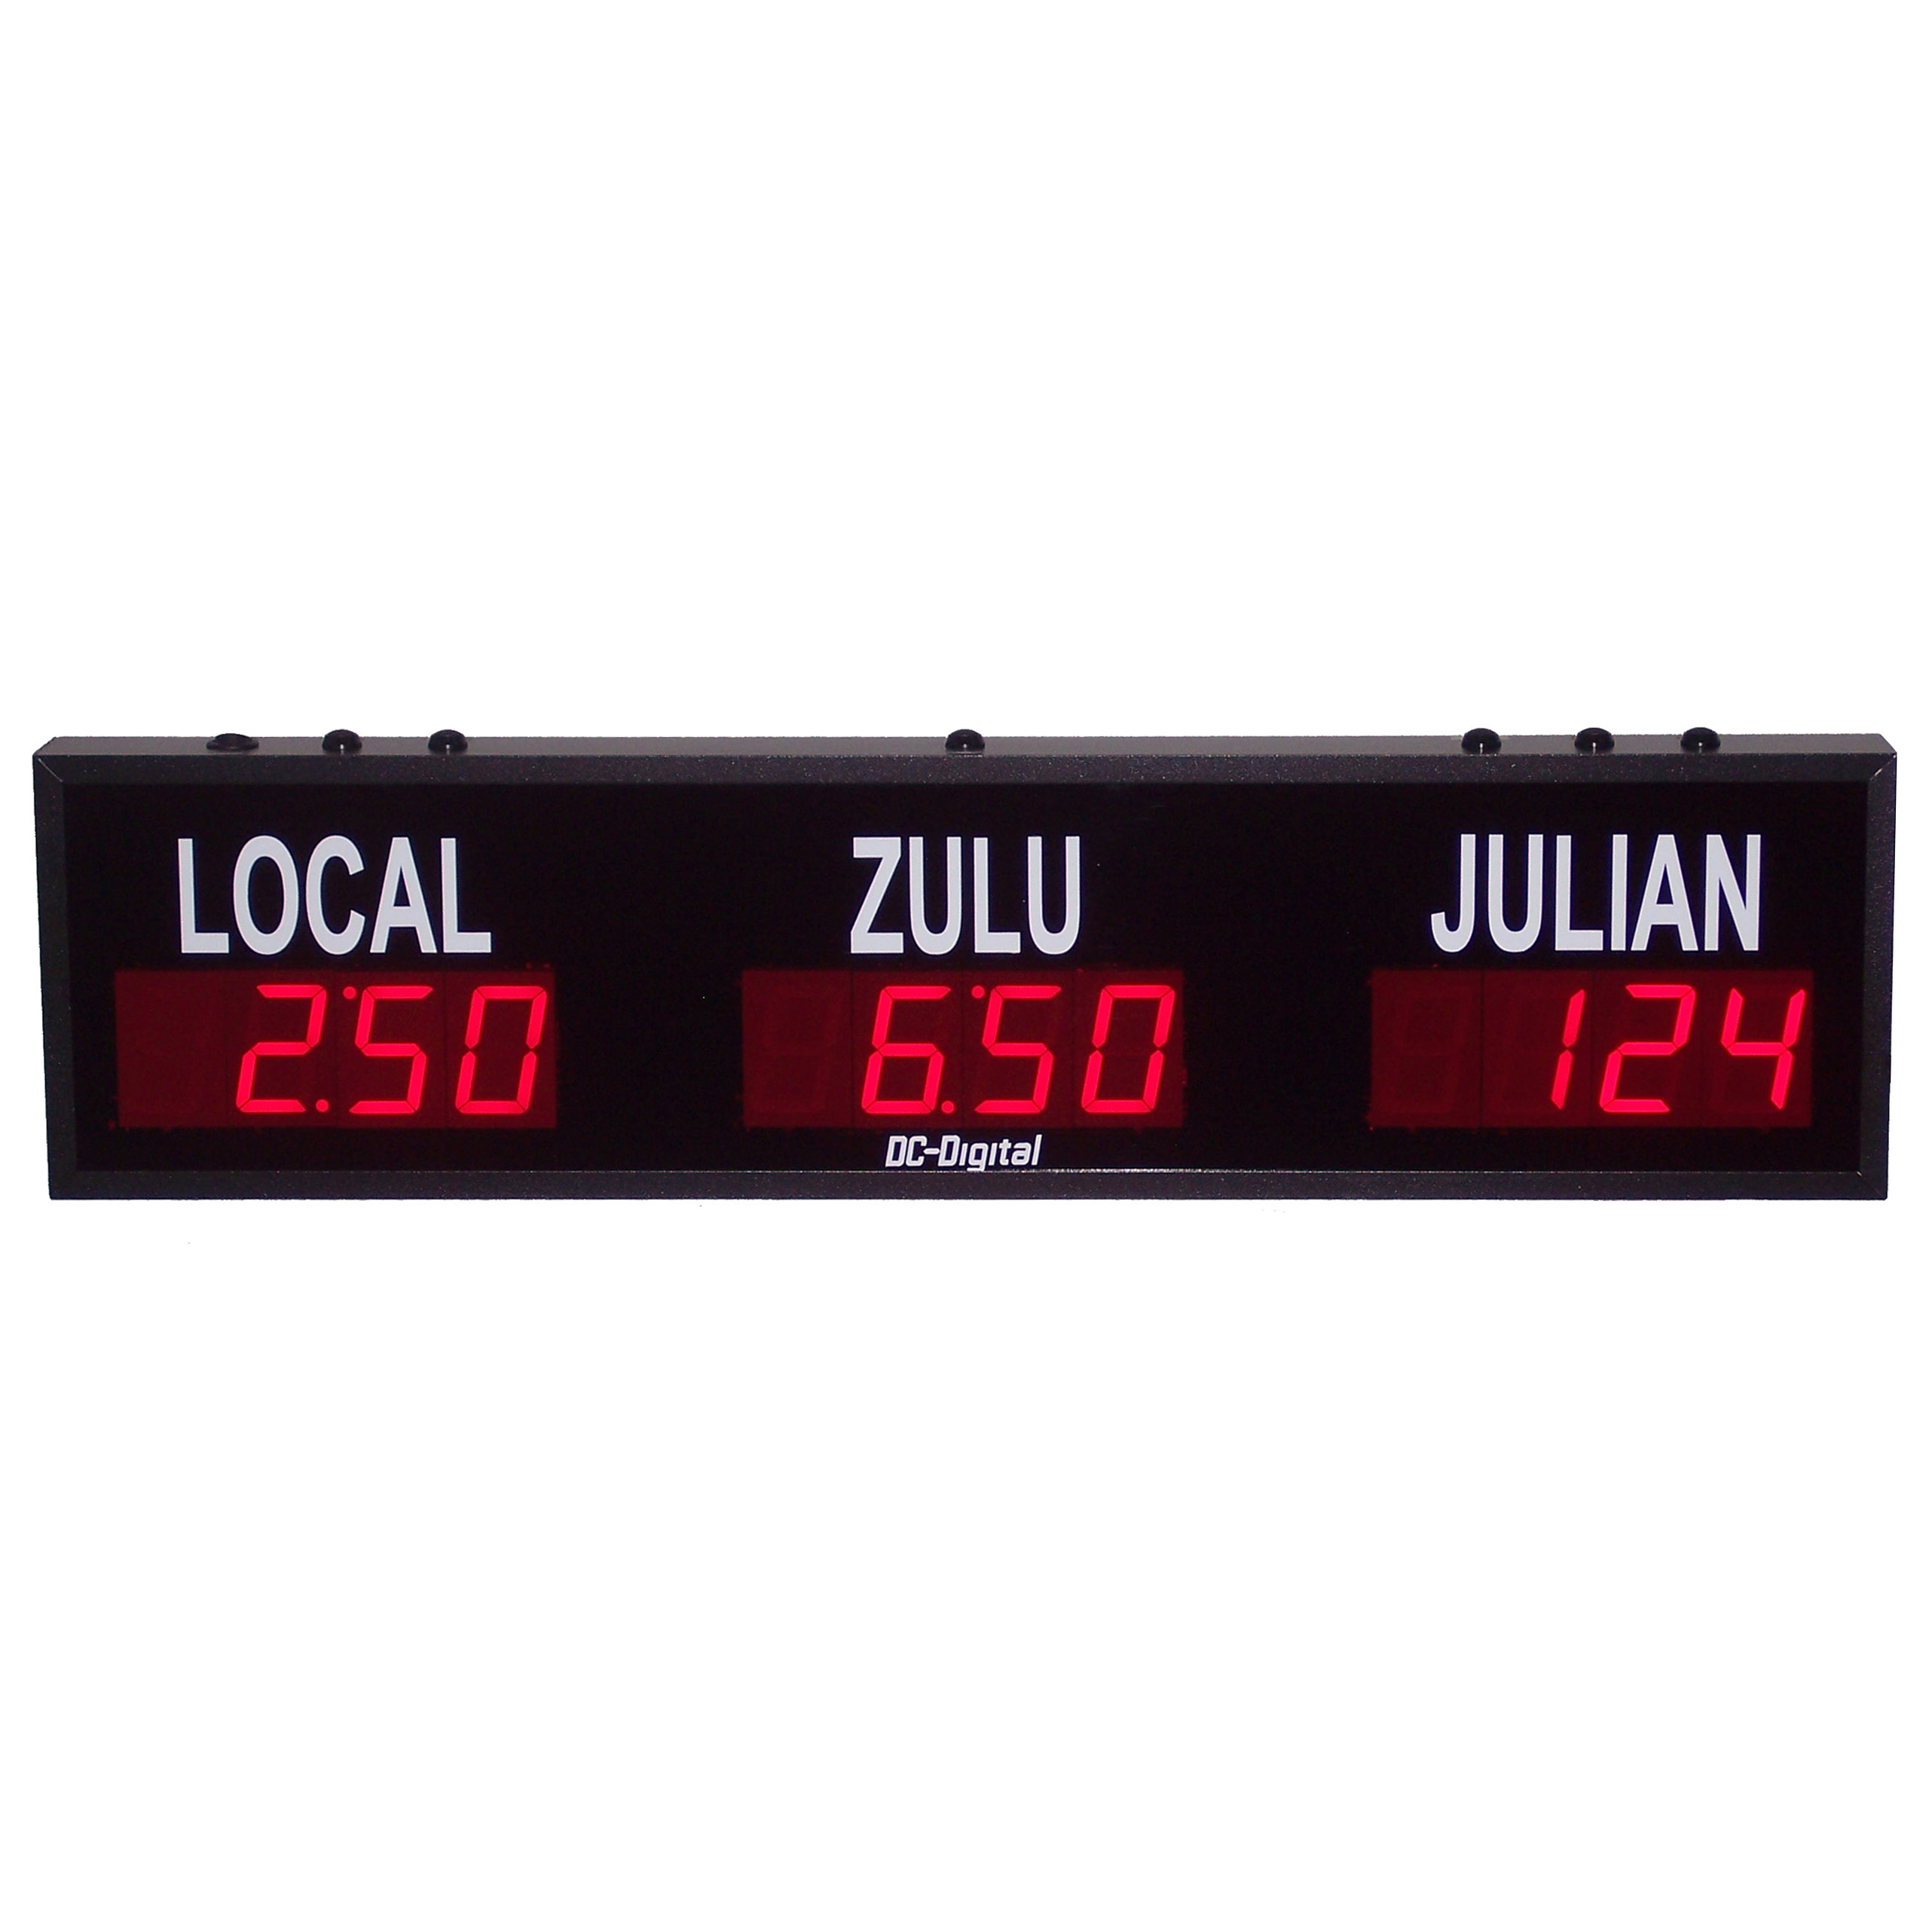 (DC-25TZ-2+Julian) 2- Zone + Julian Days, Customer Specific Vinyl Lettering, 2.3 inch Digit, World Time Zone Clocks